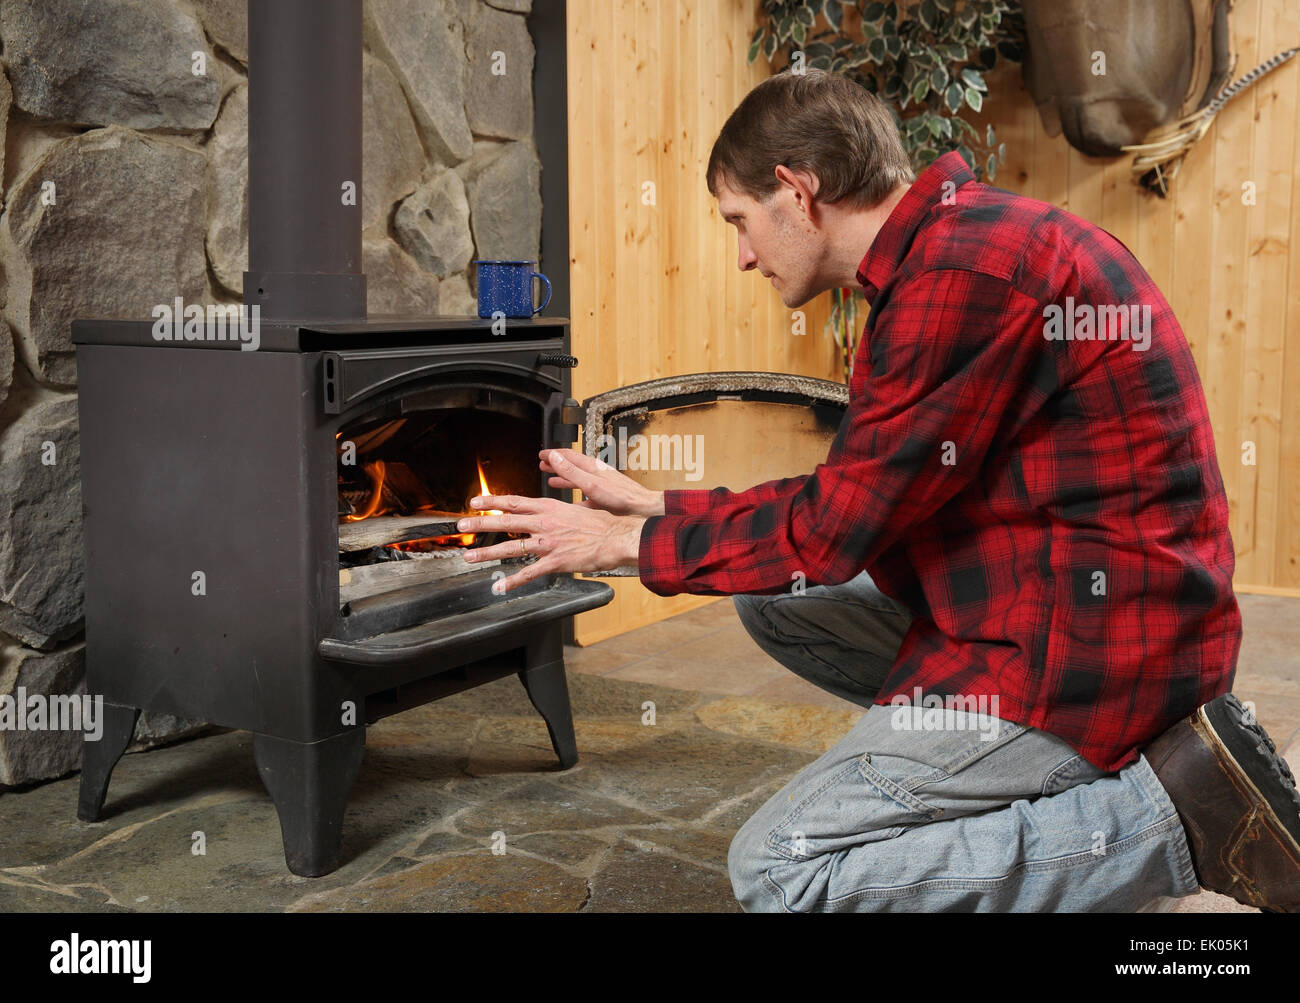 Bel homme rustique et réchauffement de la mains par cheminée cuisinière Banque D'Images